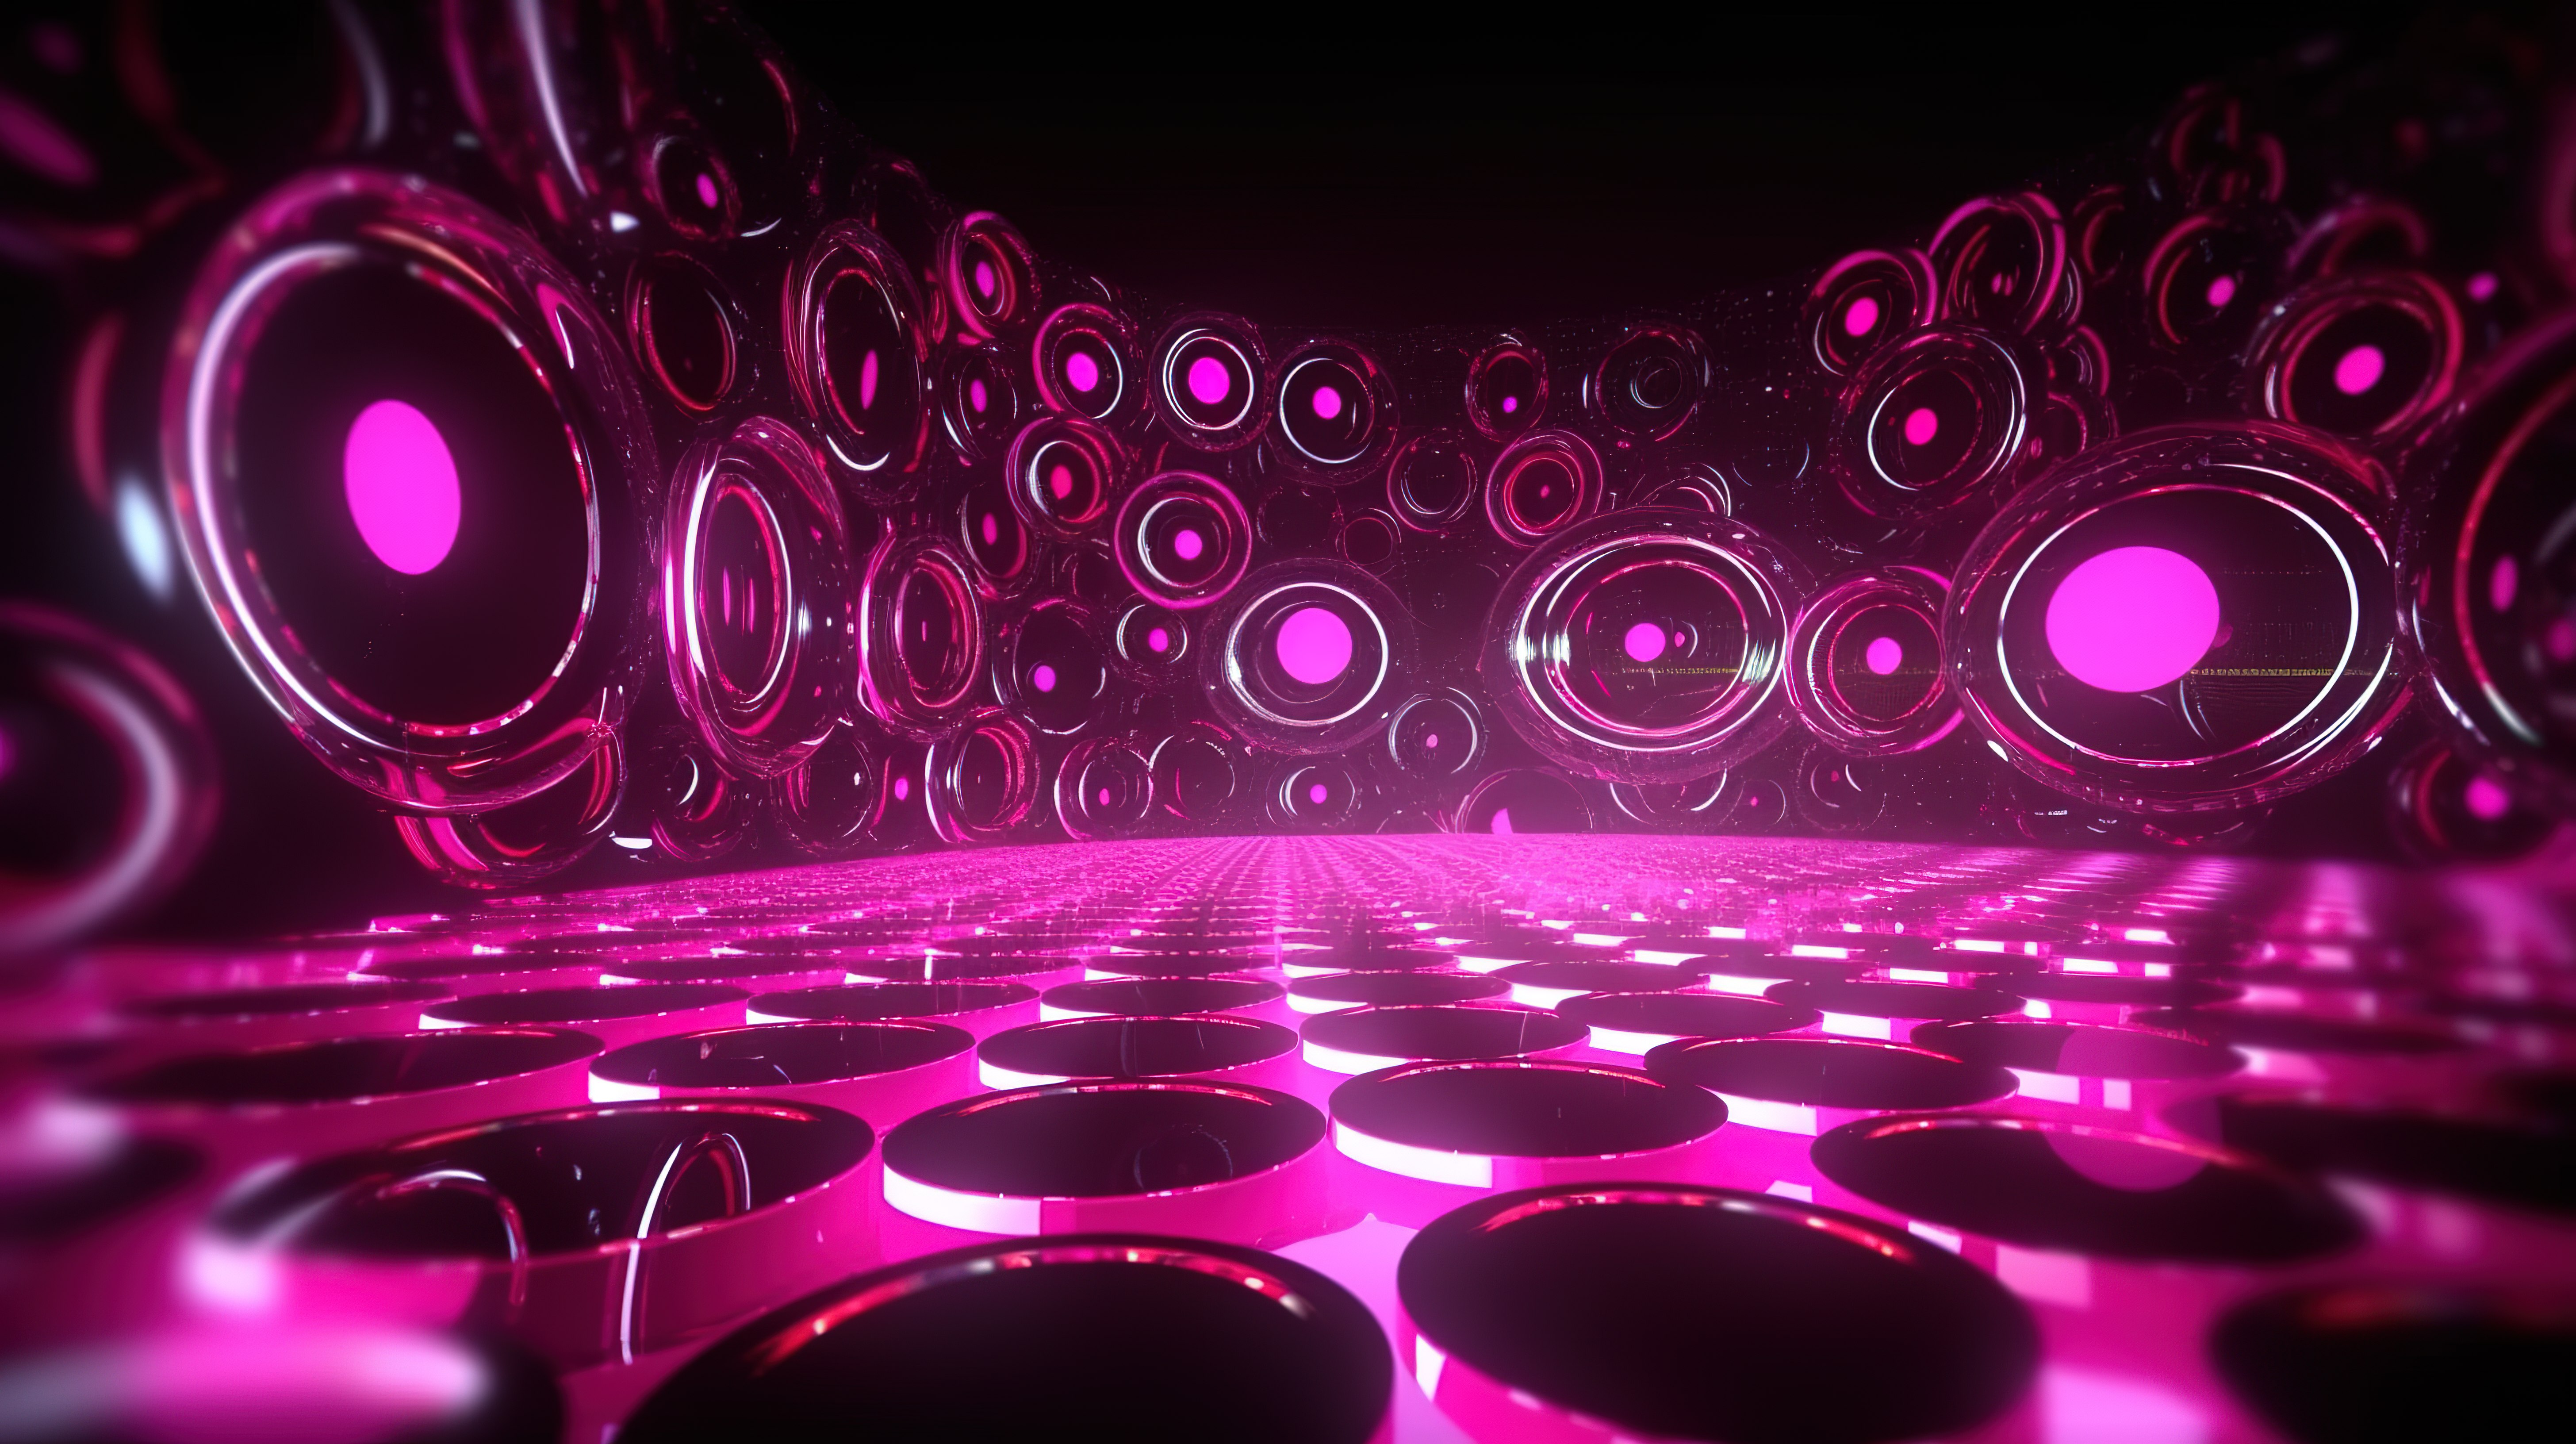 3d 渲染中充满活力的粉红色 led 圆圈背景图片